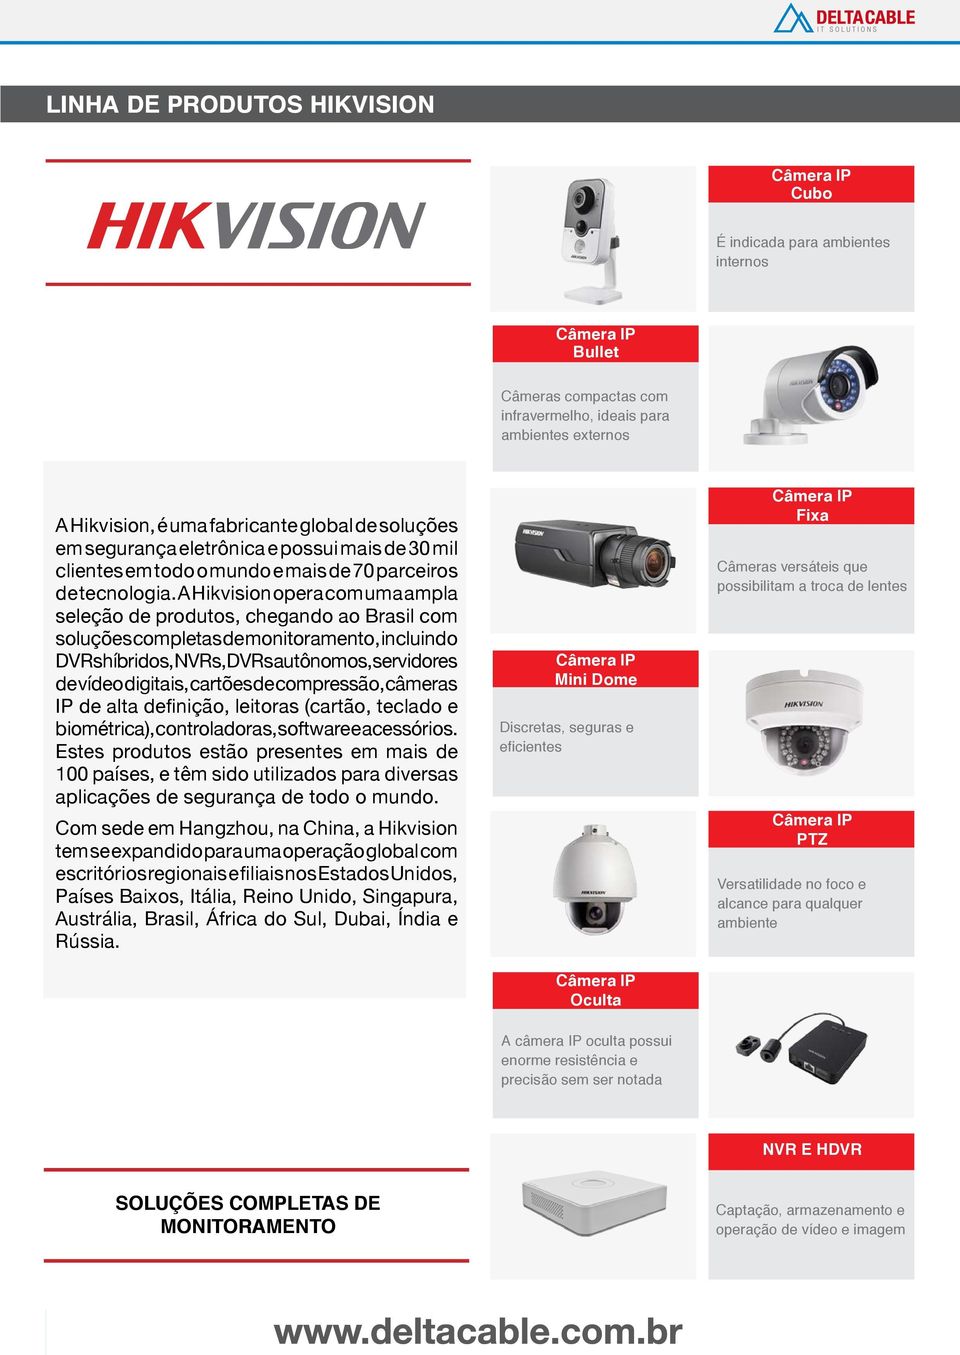 A Hikvision opera com uma ampla seleção de produtos, chegando ao Brasil com soluções completas de monitoramento, incluindo DVRs híbridos, NVRs, DVRs autônomos, servidores de vídeo digitais, cartões